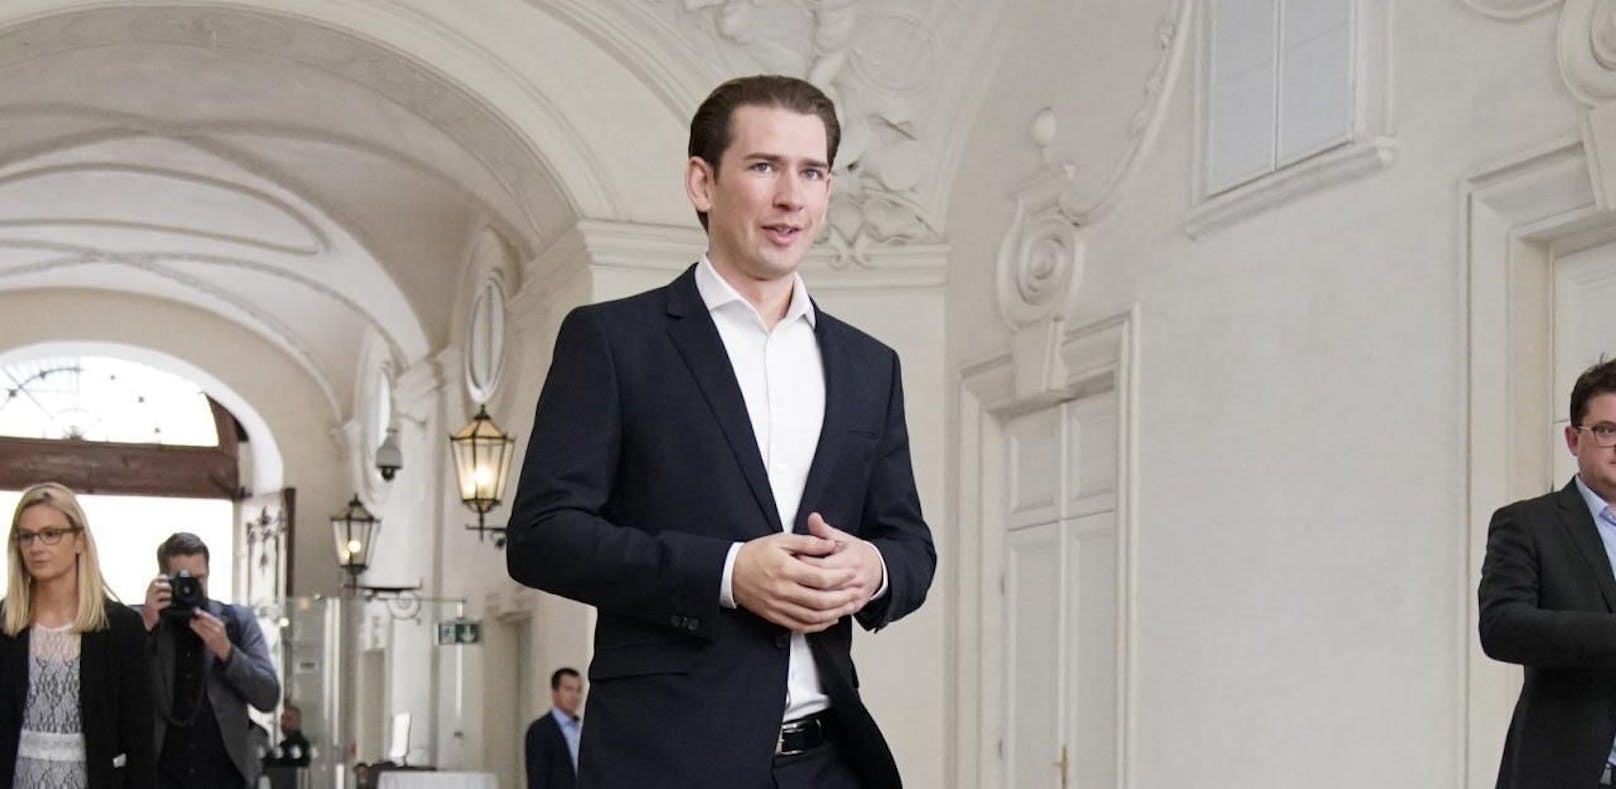 Die ersten Sondierungsgespräche nach der Nationalratswahl 2019 fanden in Räumlichkeiten des Finanzministeriums im Winterpalais des Prinz Eugen von Savoyen statt.